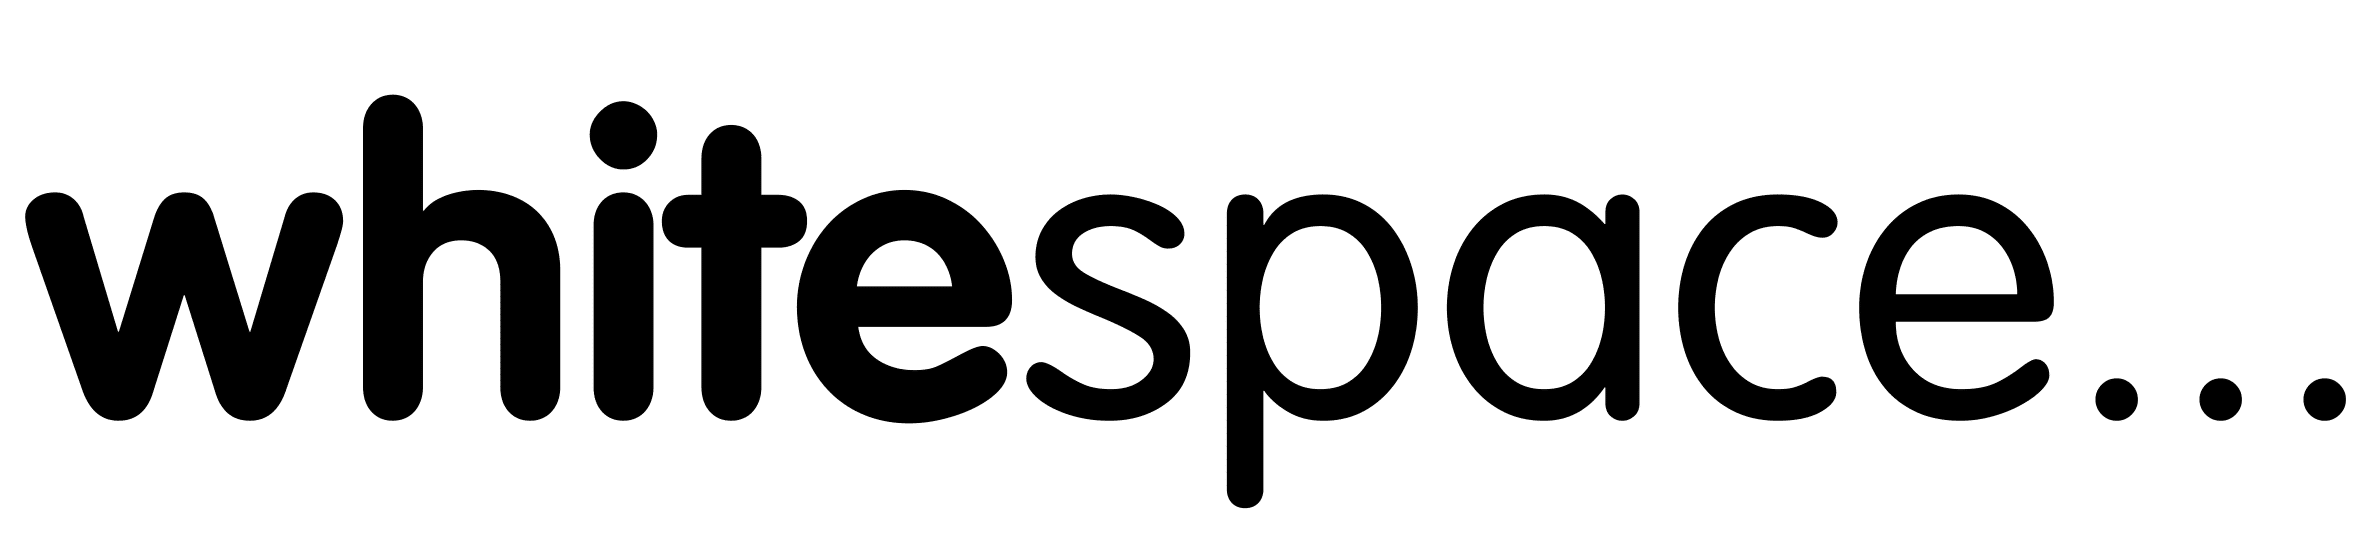 whitespace logo in black Mar 2015-1